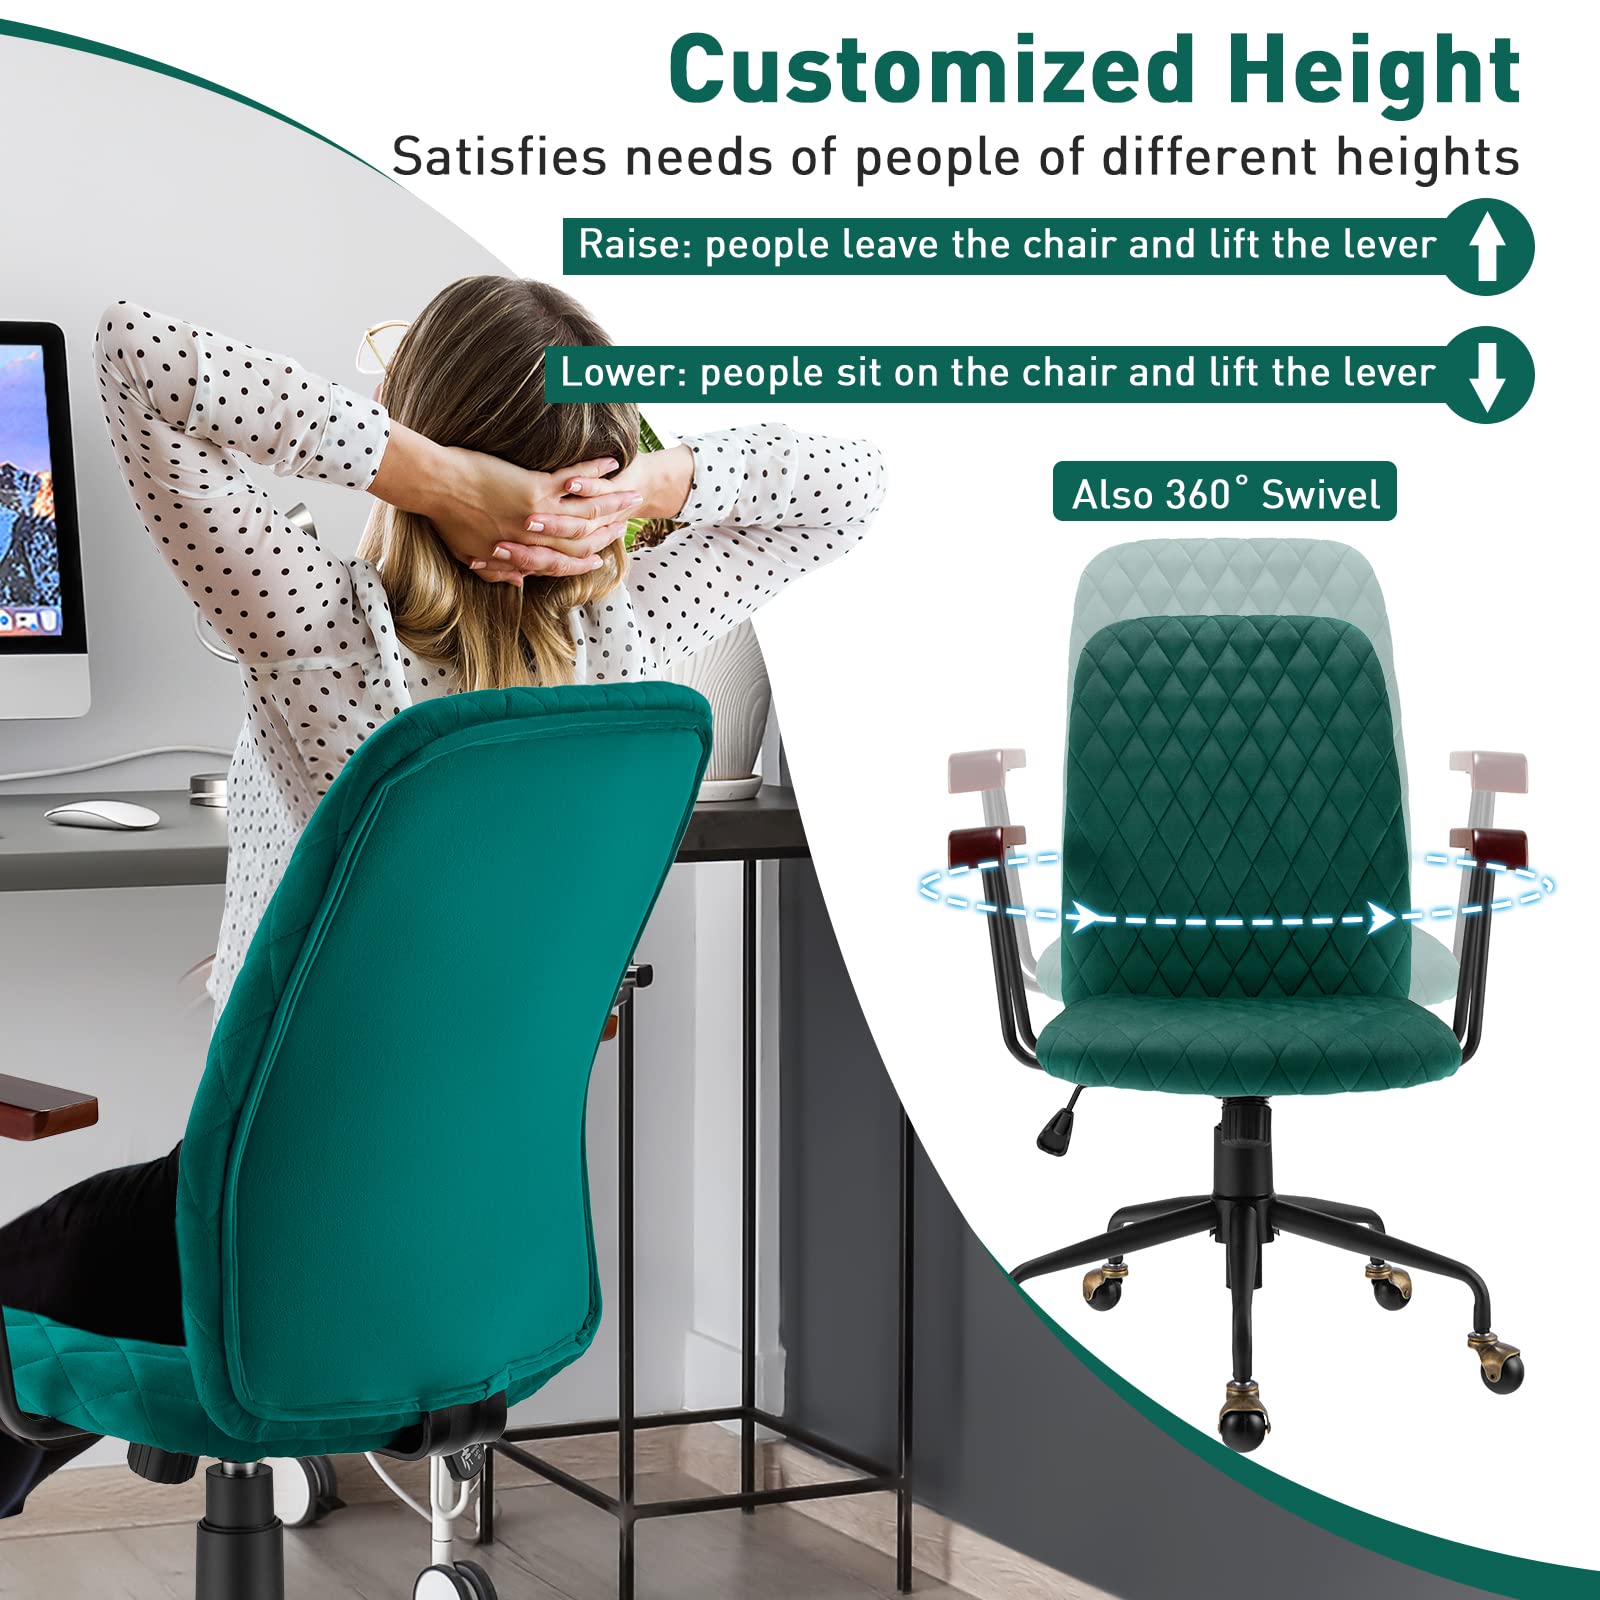 Giantex Velvet Home Office Desk Chair